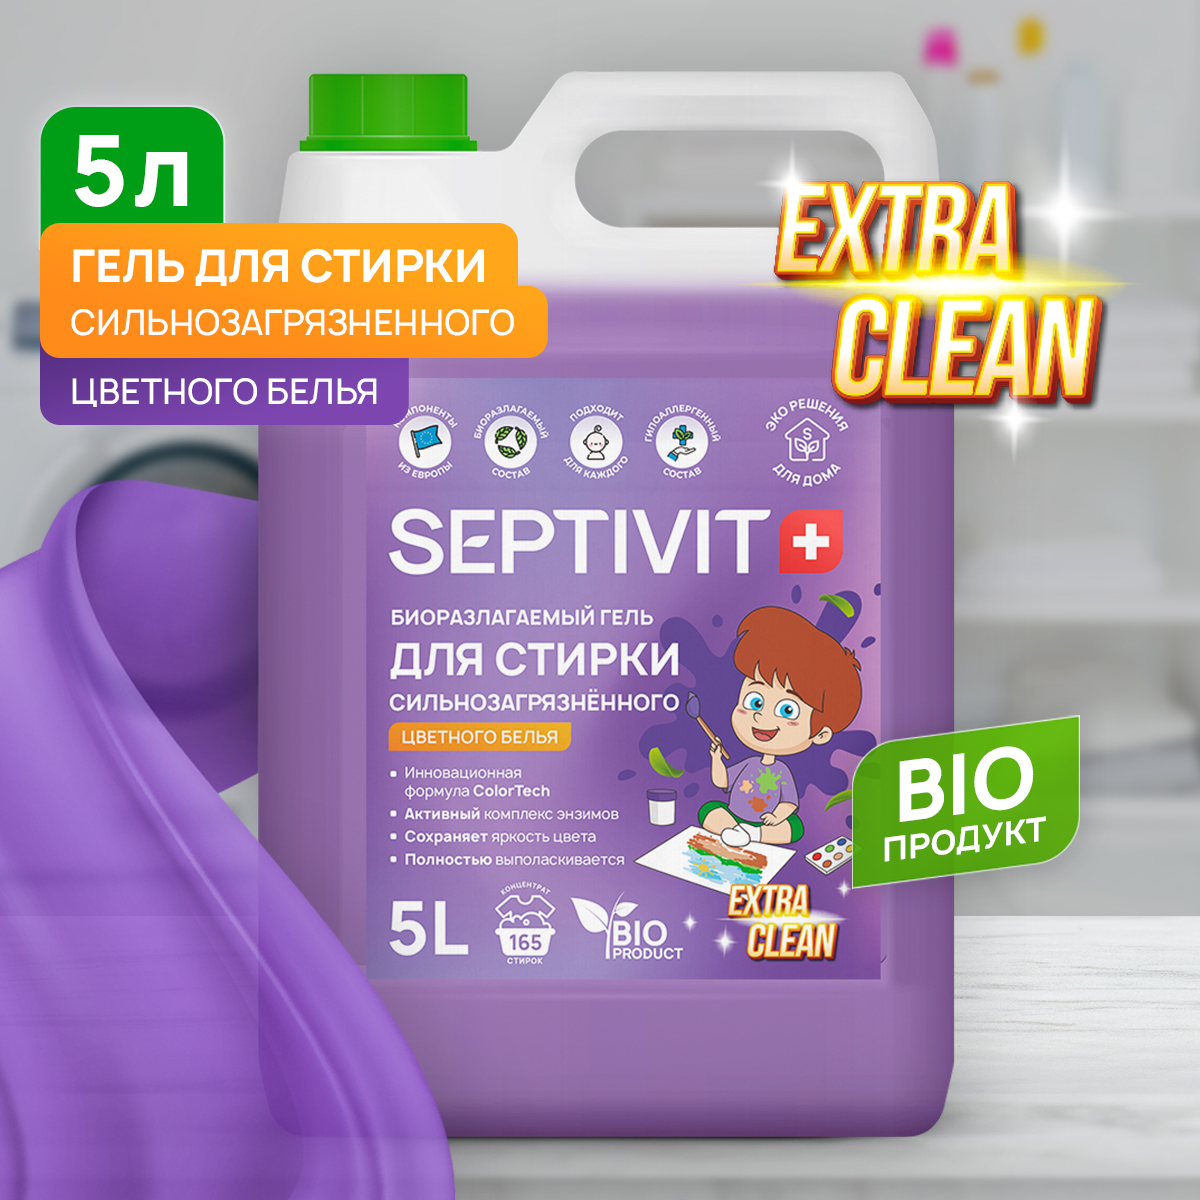 Гель для стирки Septivit Premium сильно загрязненного цветного белья 5л